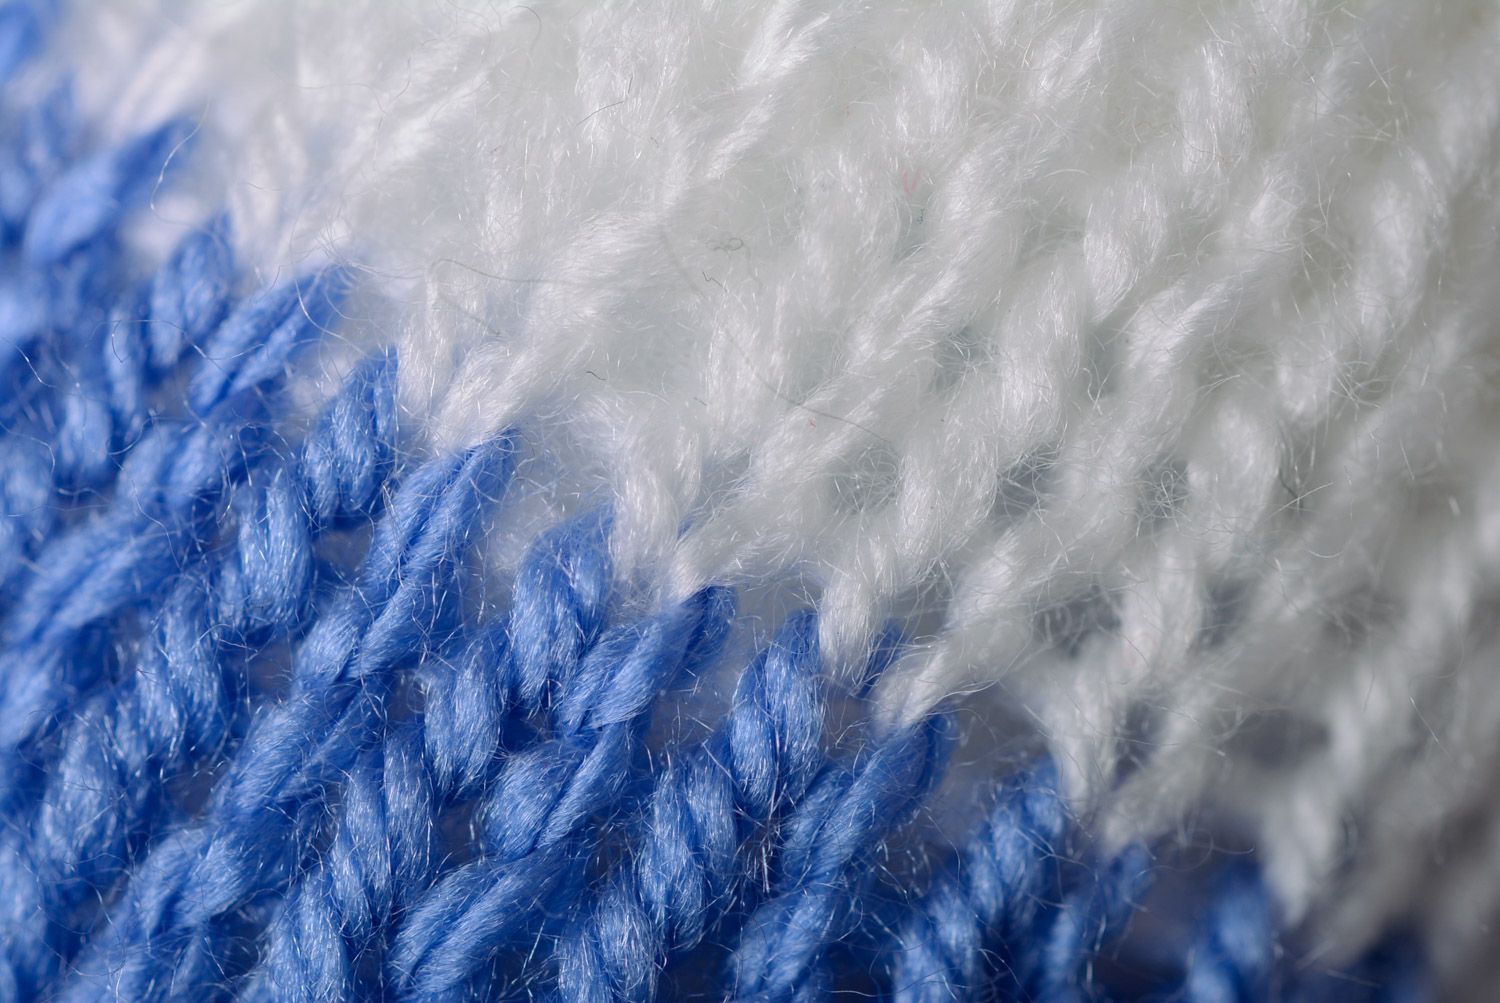 Juguete tejido con agujas liebre blanca en suéter azul sonriente artesanal  foto 4